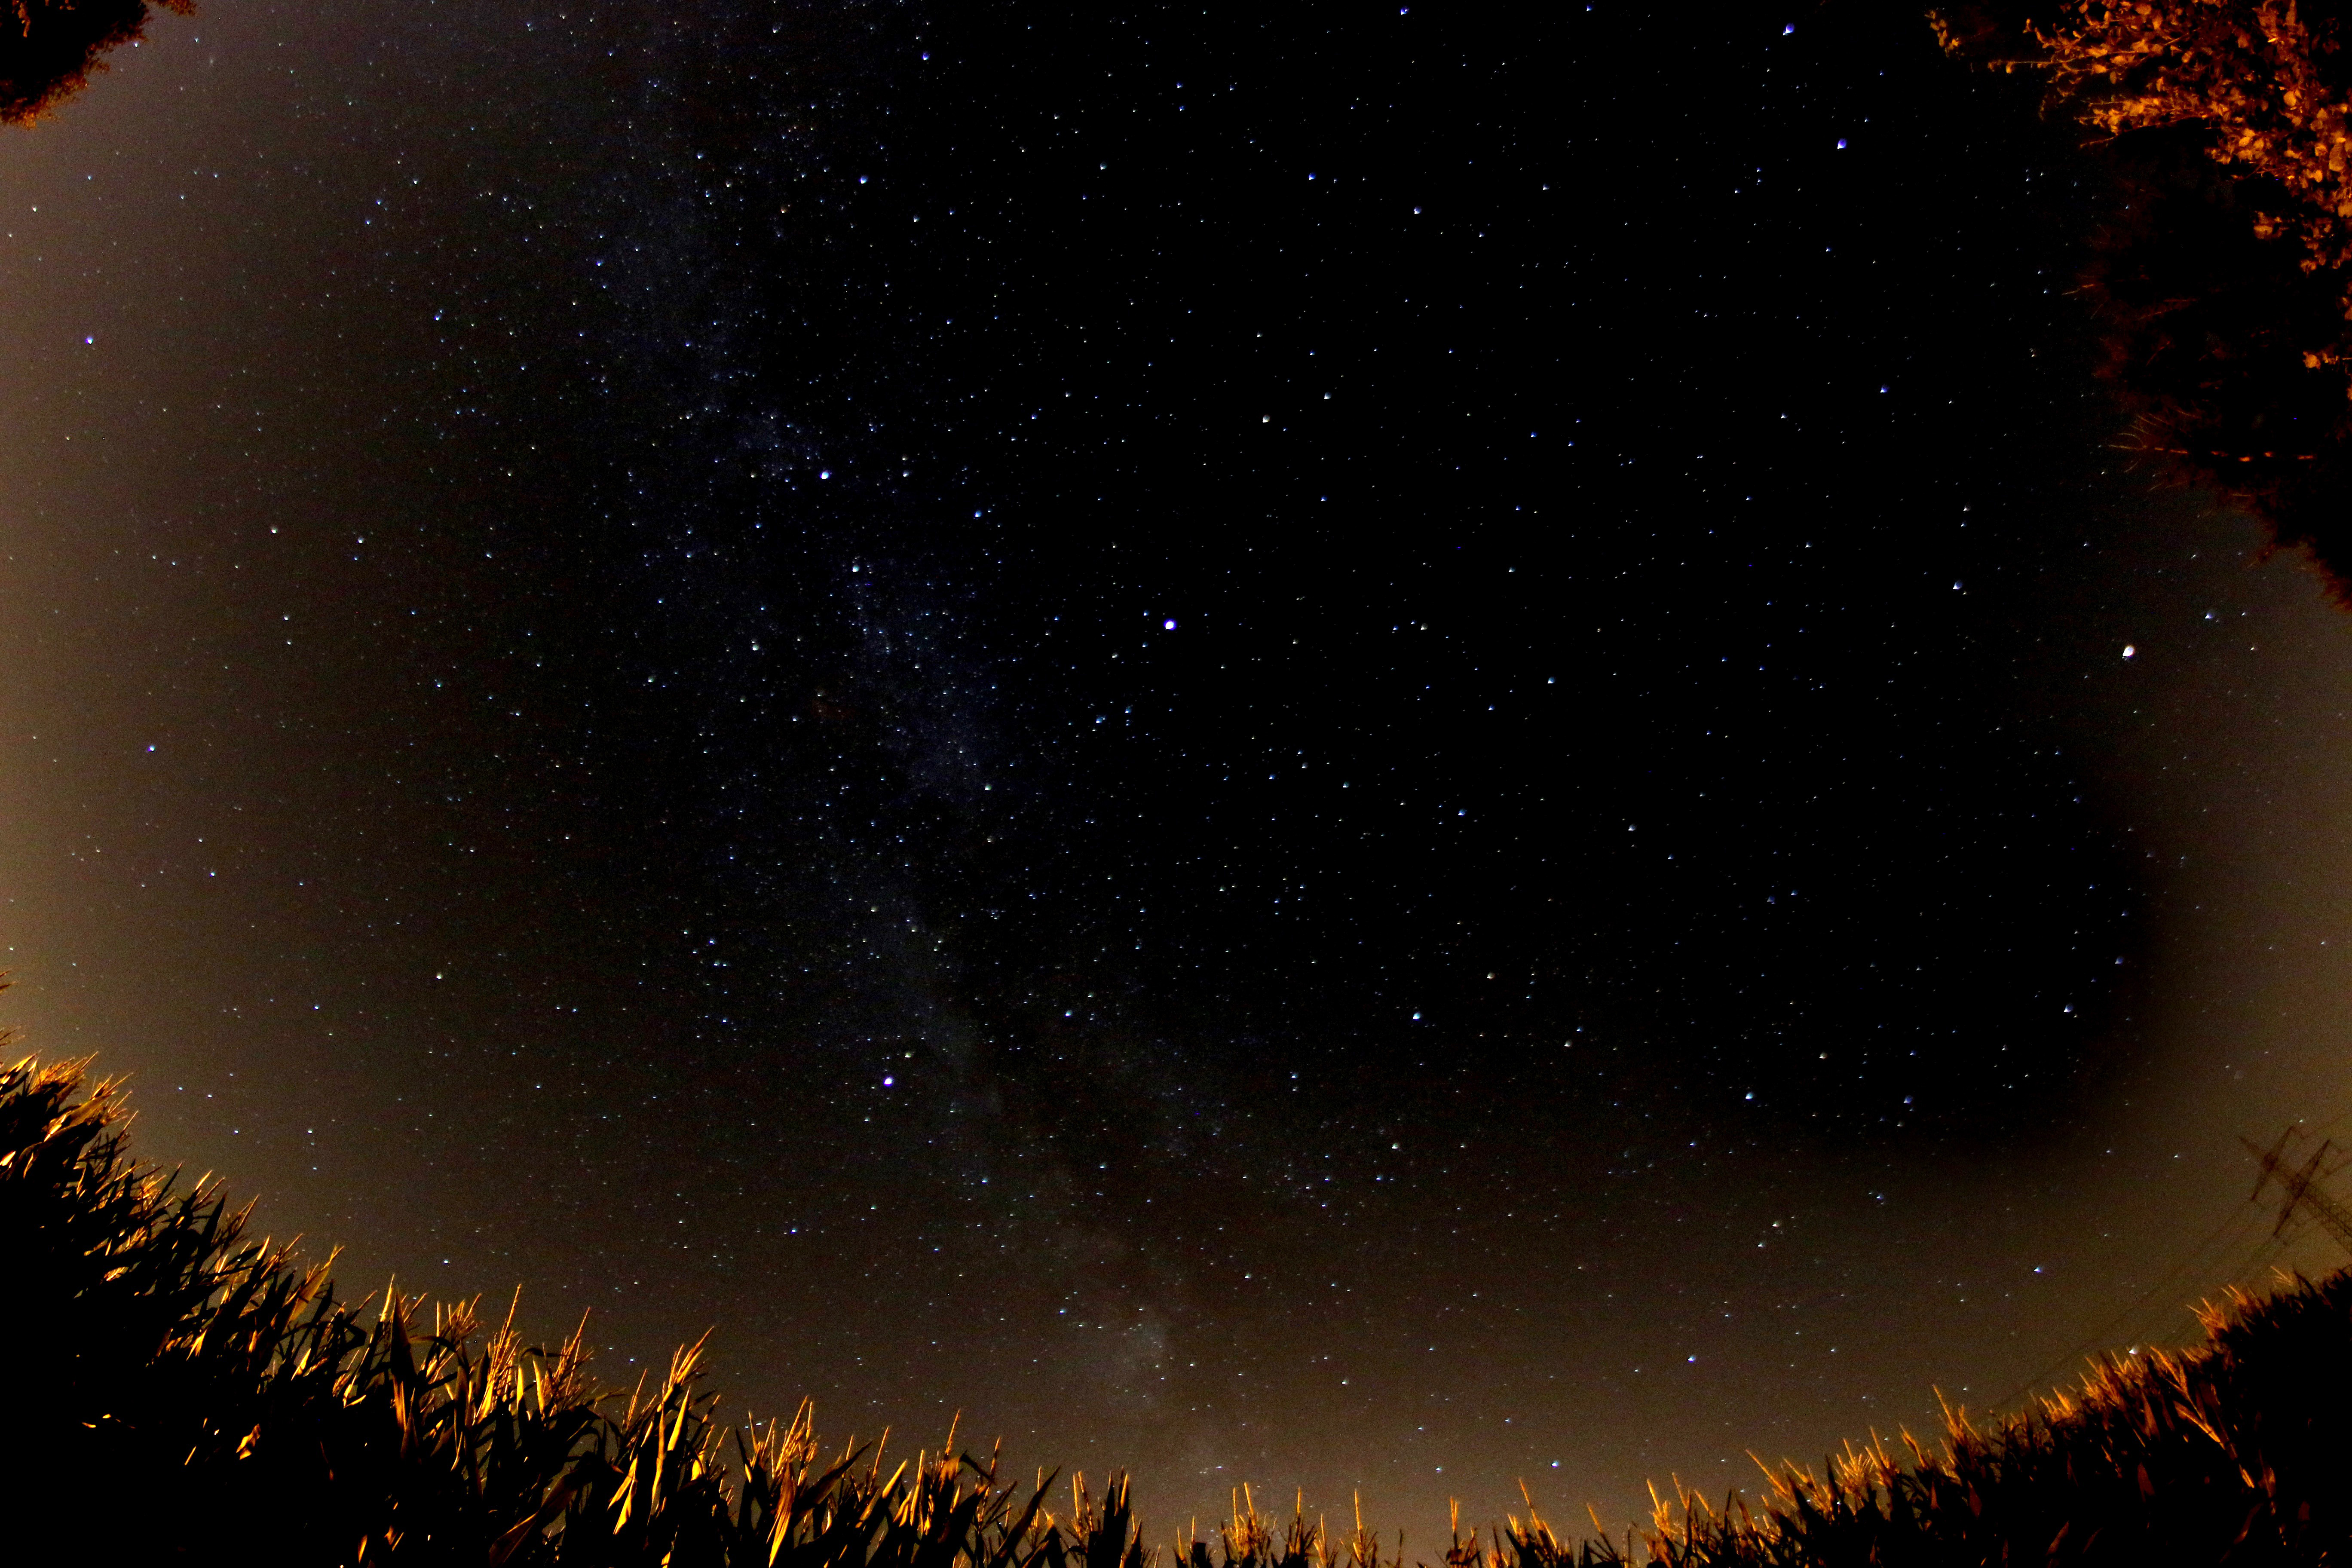 Stars in the Dark Sky image - Free stock photo - Public ...